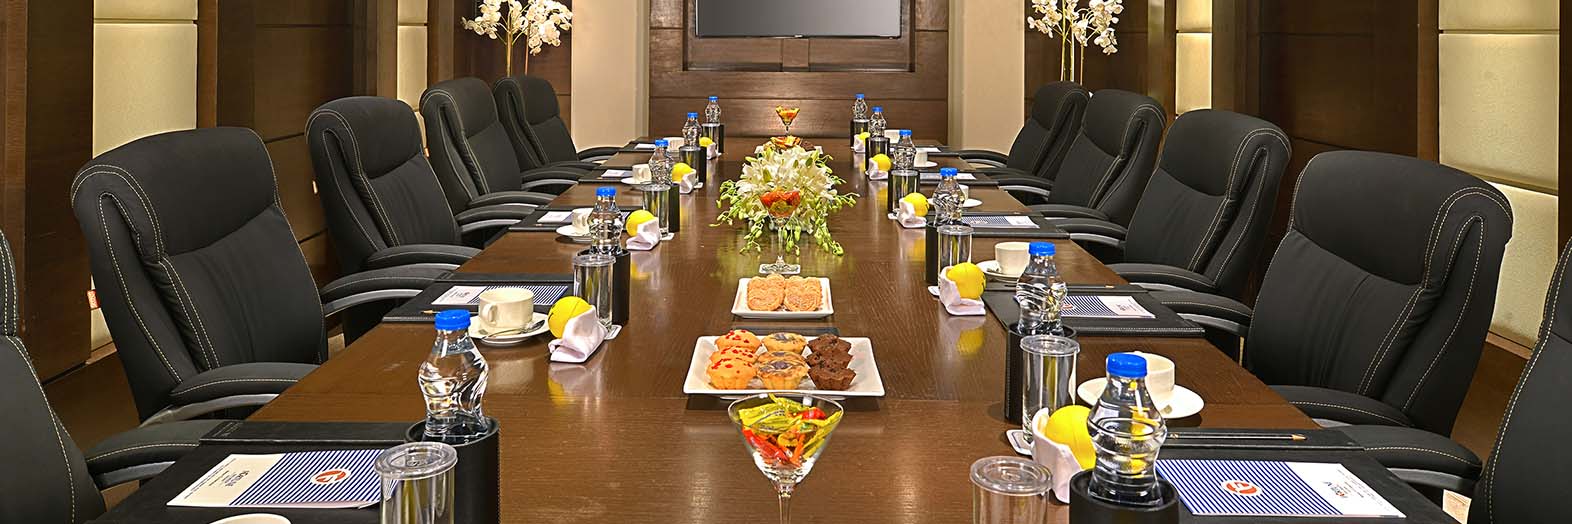 Fortune Inn Grazia – Gaziabad Hotels Meeting Venue